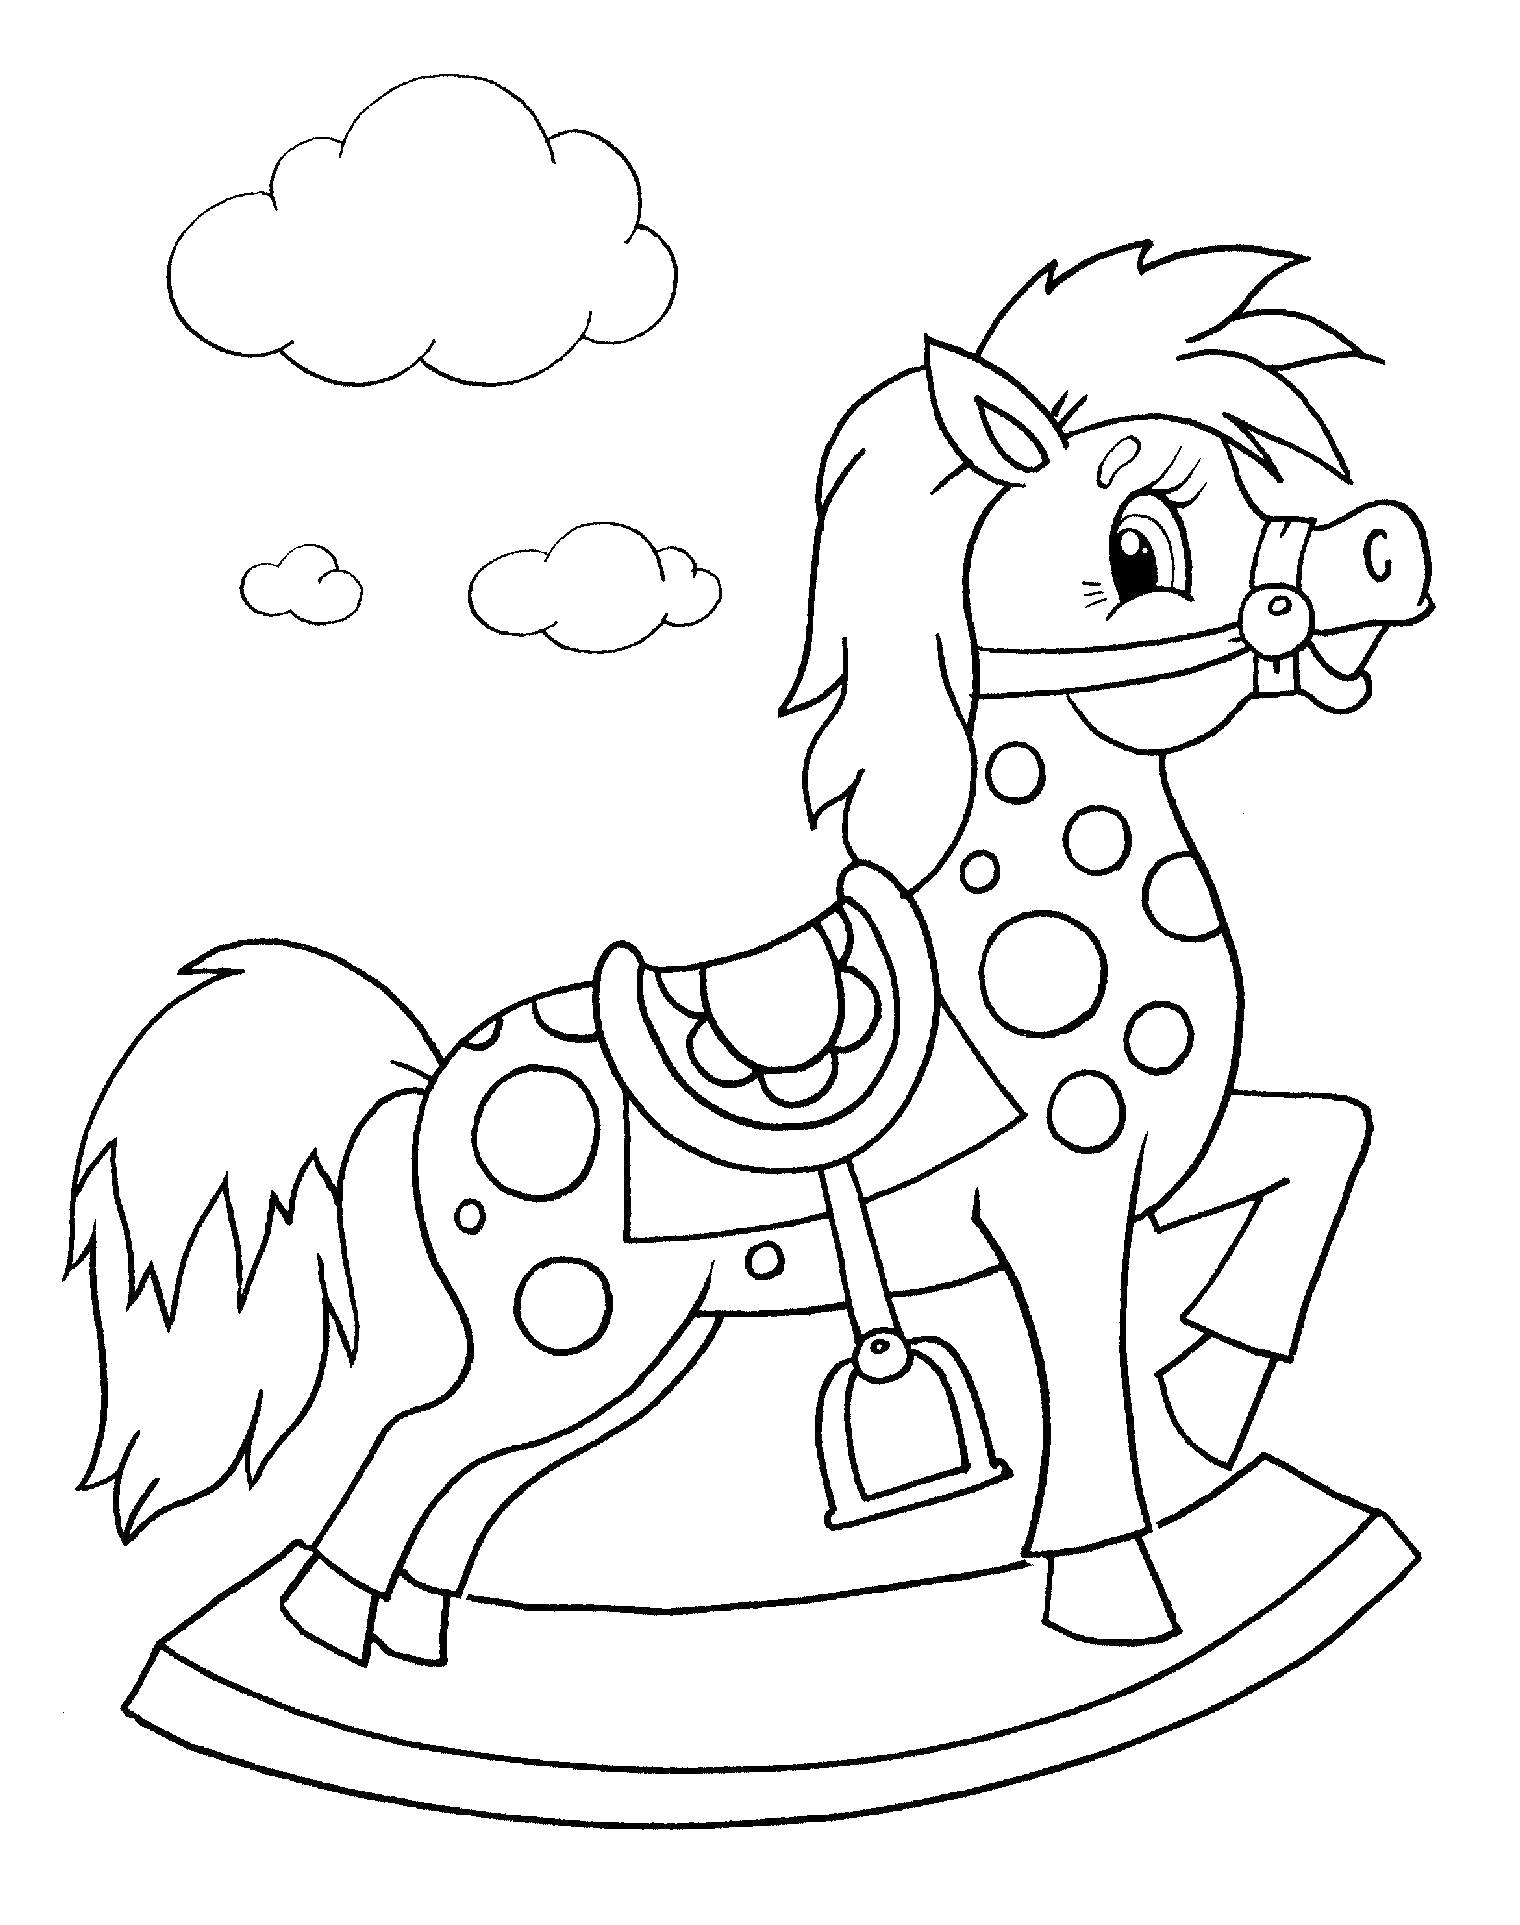 Изображение раскрашенной лошадки-игрушки для девочек (девочки, лошадка, игрушка)